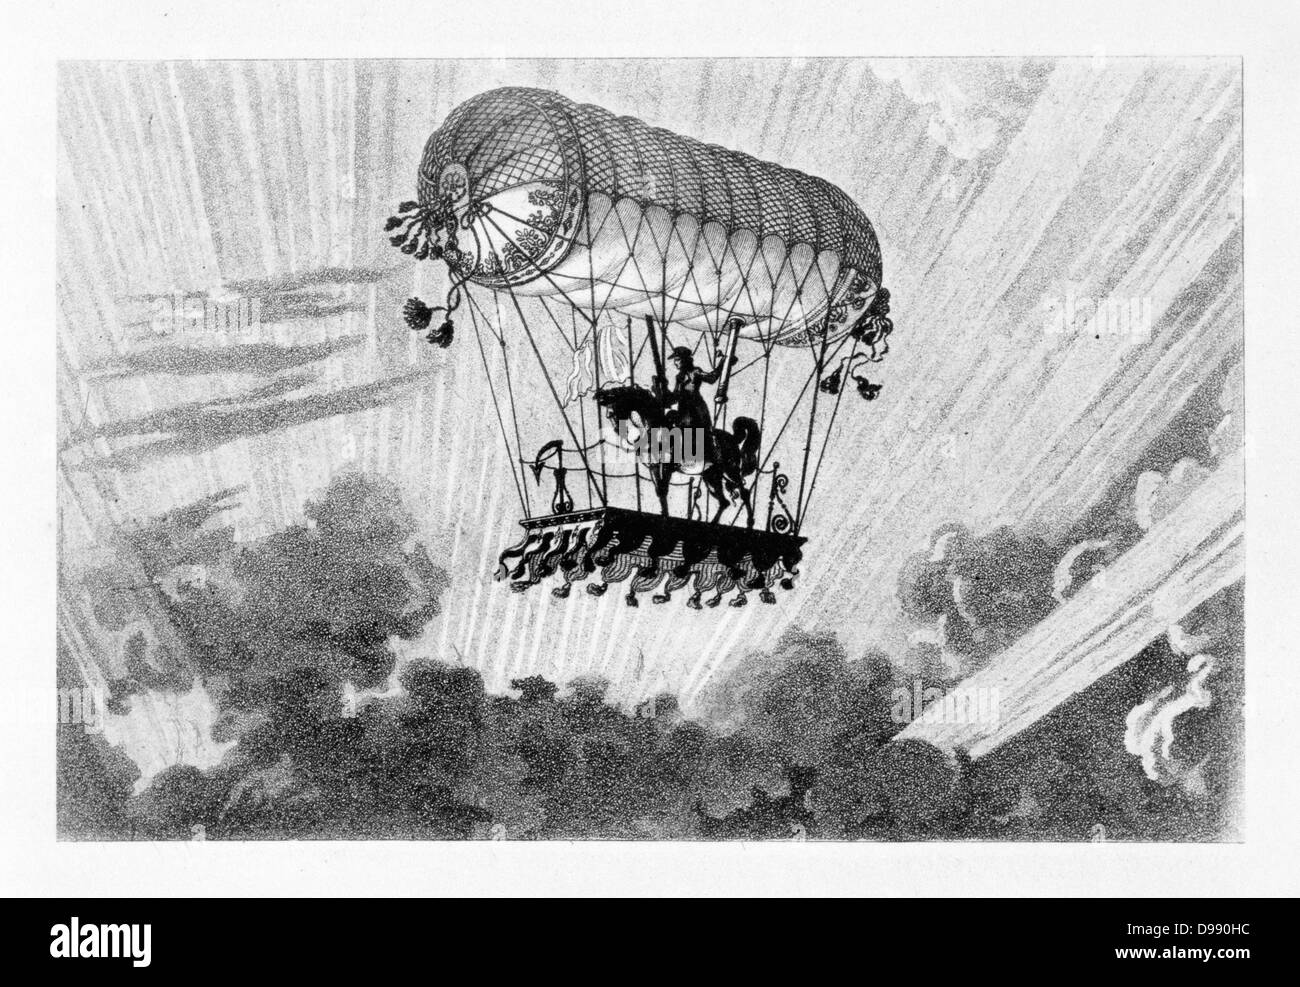 La mongolfiera fantasy: Idea per il ballon che trasportano un cavaliere montato. Da "Histoire des Ballons' da Gaston Tissandier, Parigi, 1887. Aviation aeronautica Foto Stock